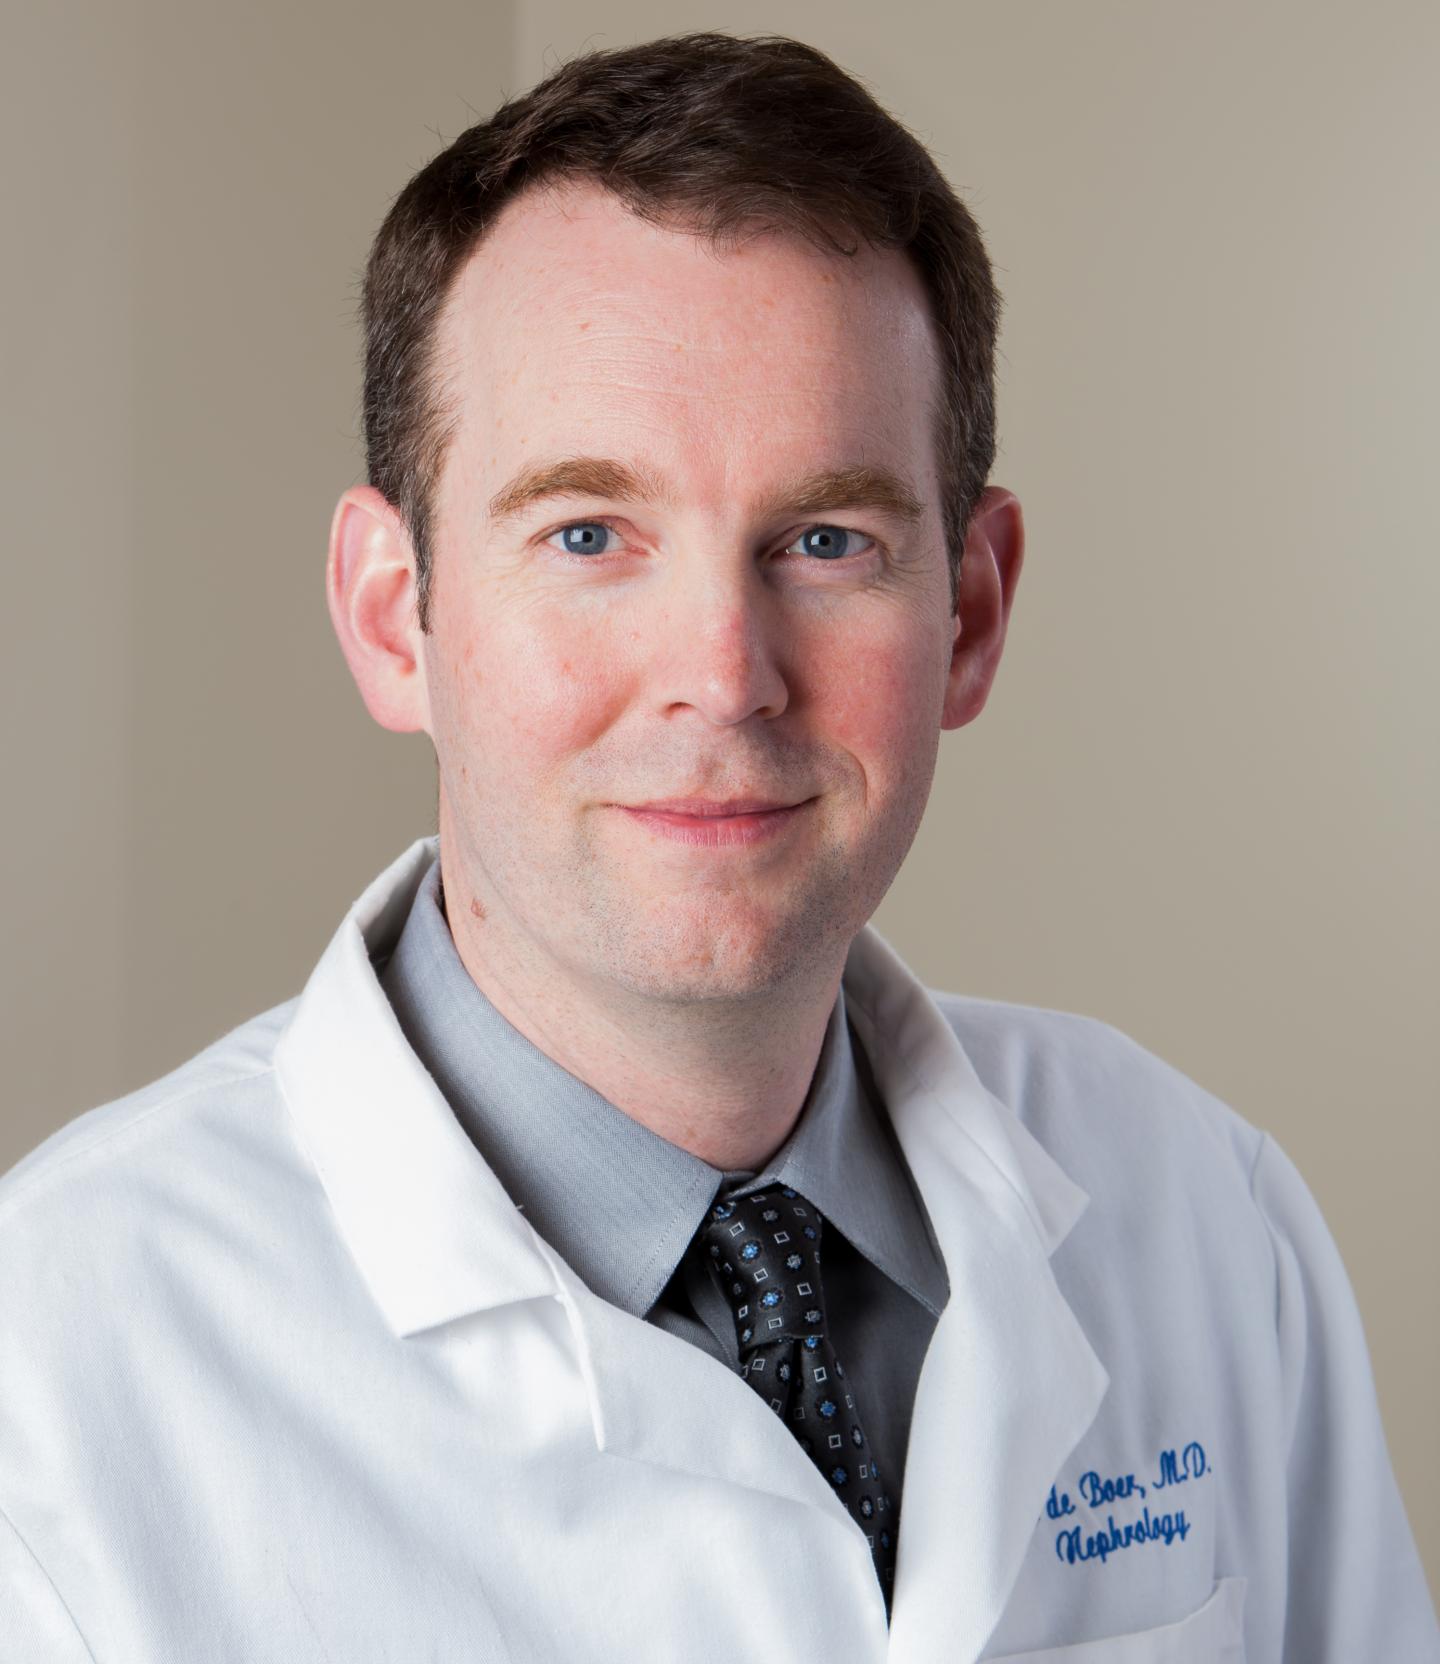 Ian de Boer, University of Washington Health Sciences/UW Medicine